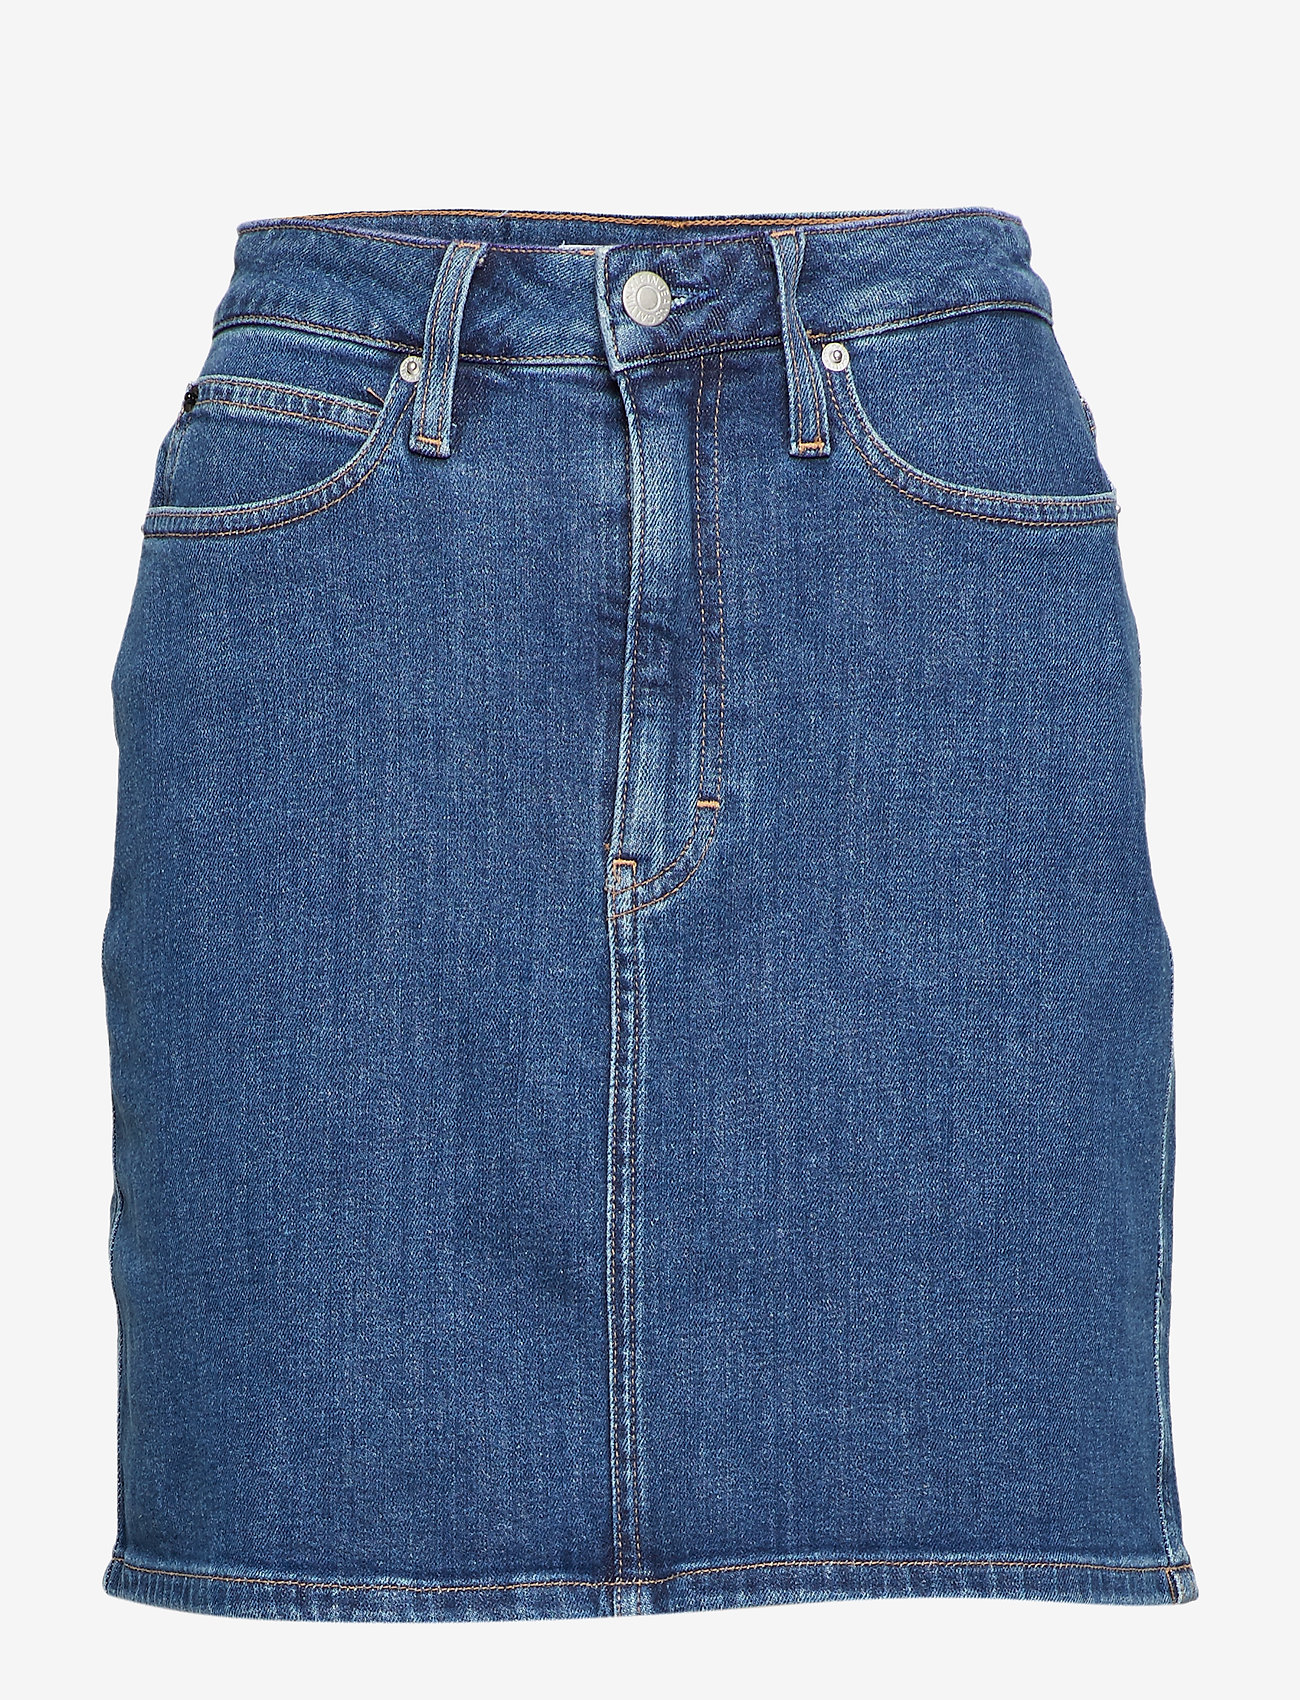 calvin klein jeans denim skirt